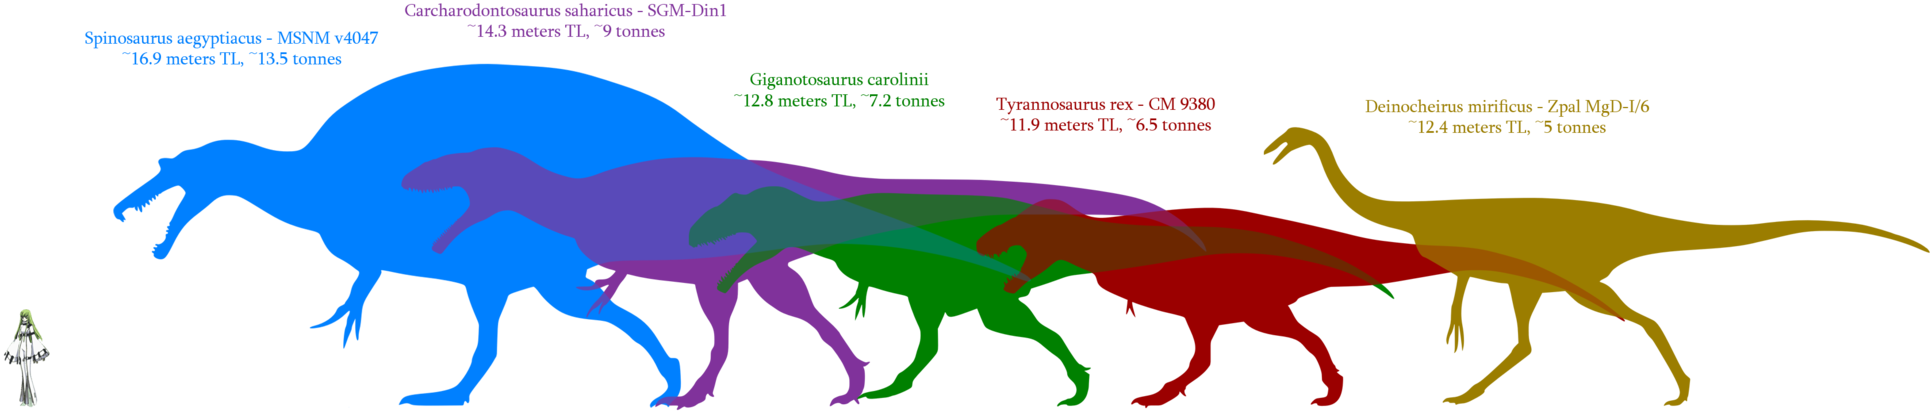 Jul 4 2013, - Spinosaurus Size Comparison (1932x414)